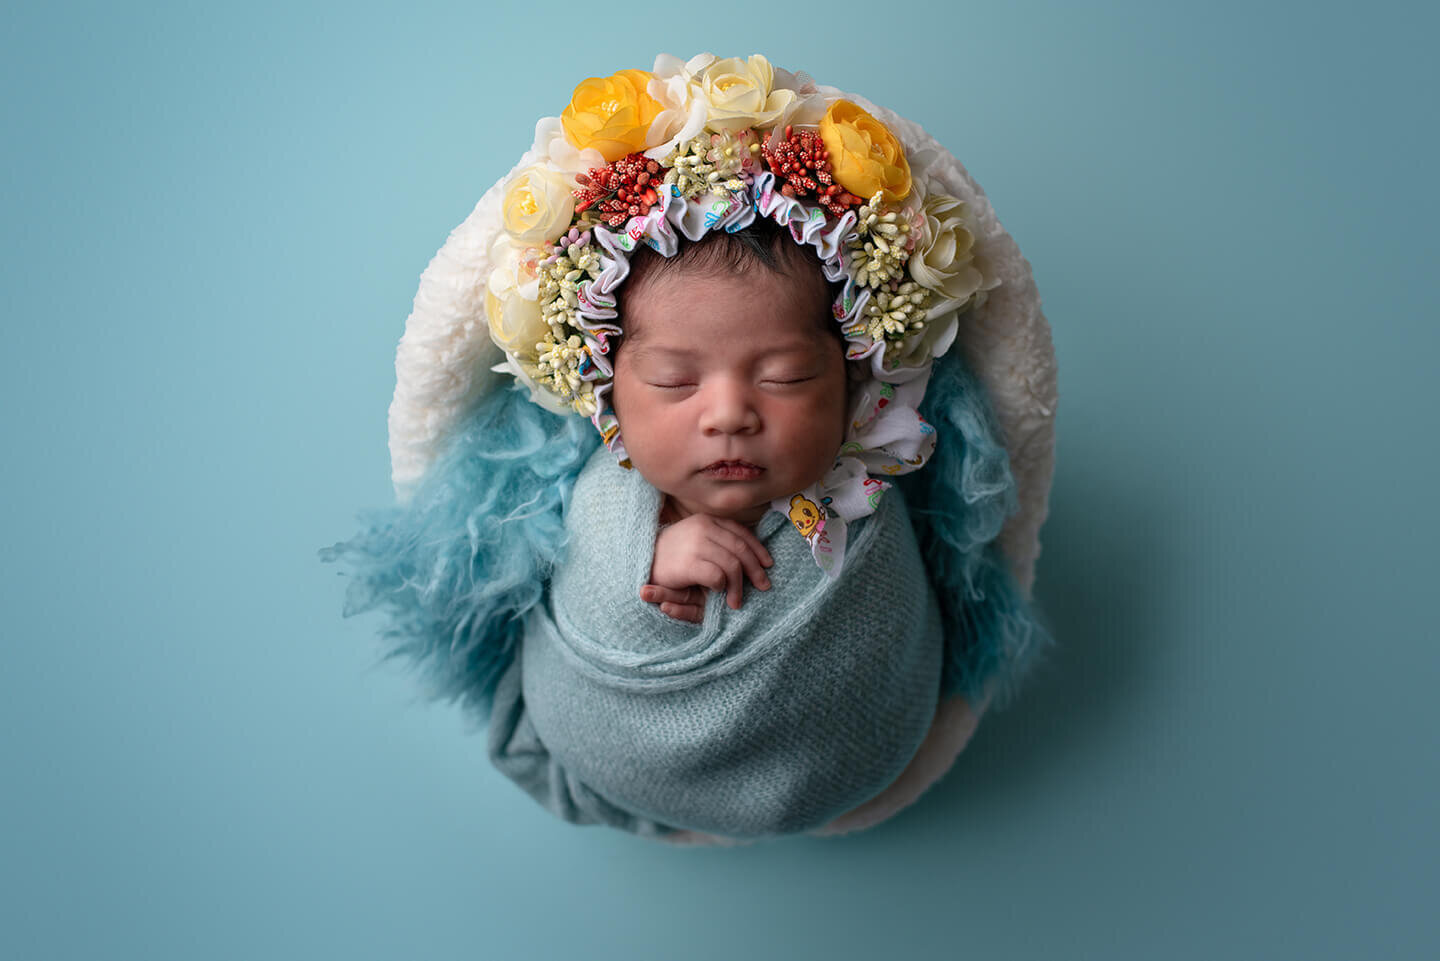 Newborn in a yellow flower bonnet